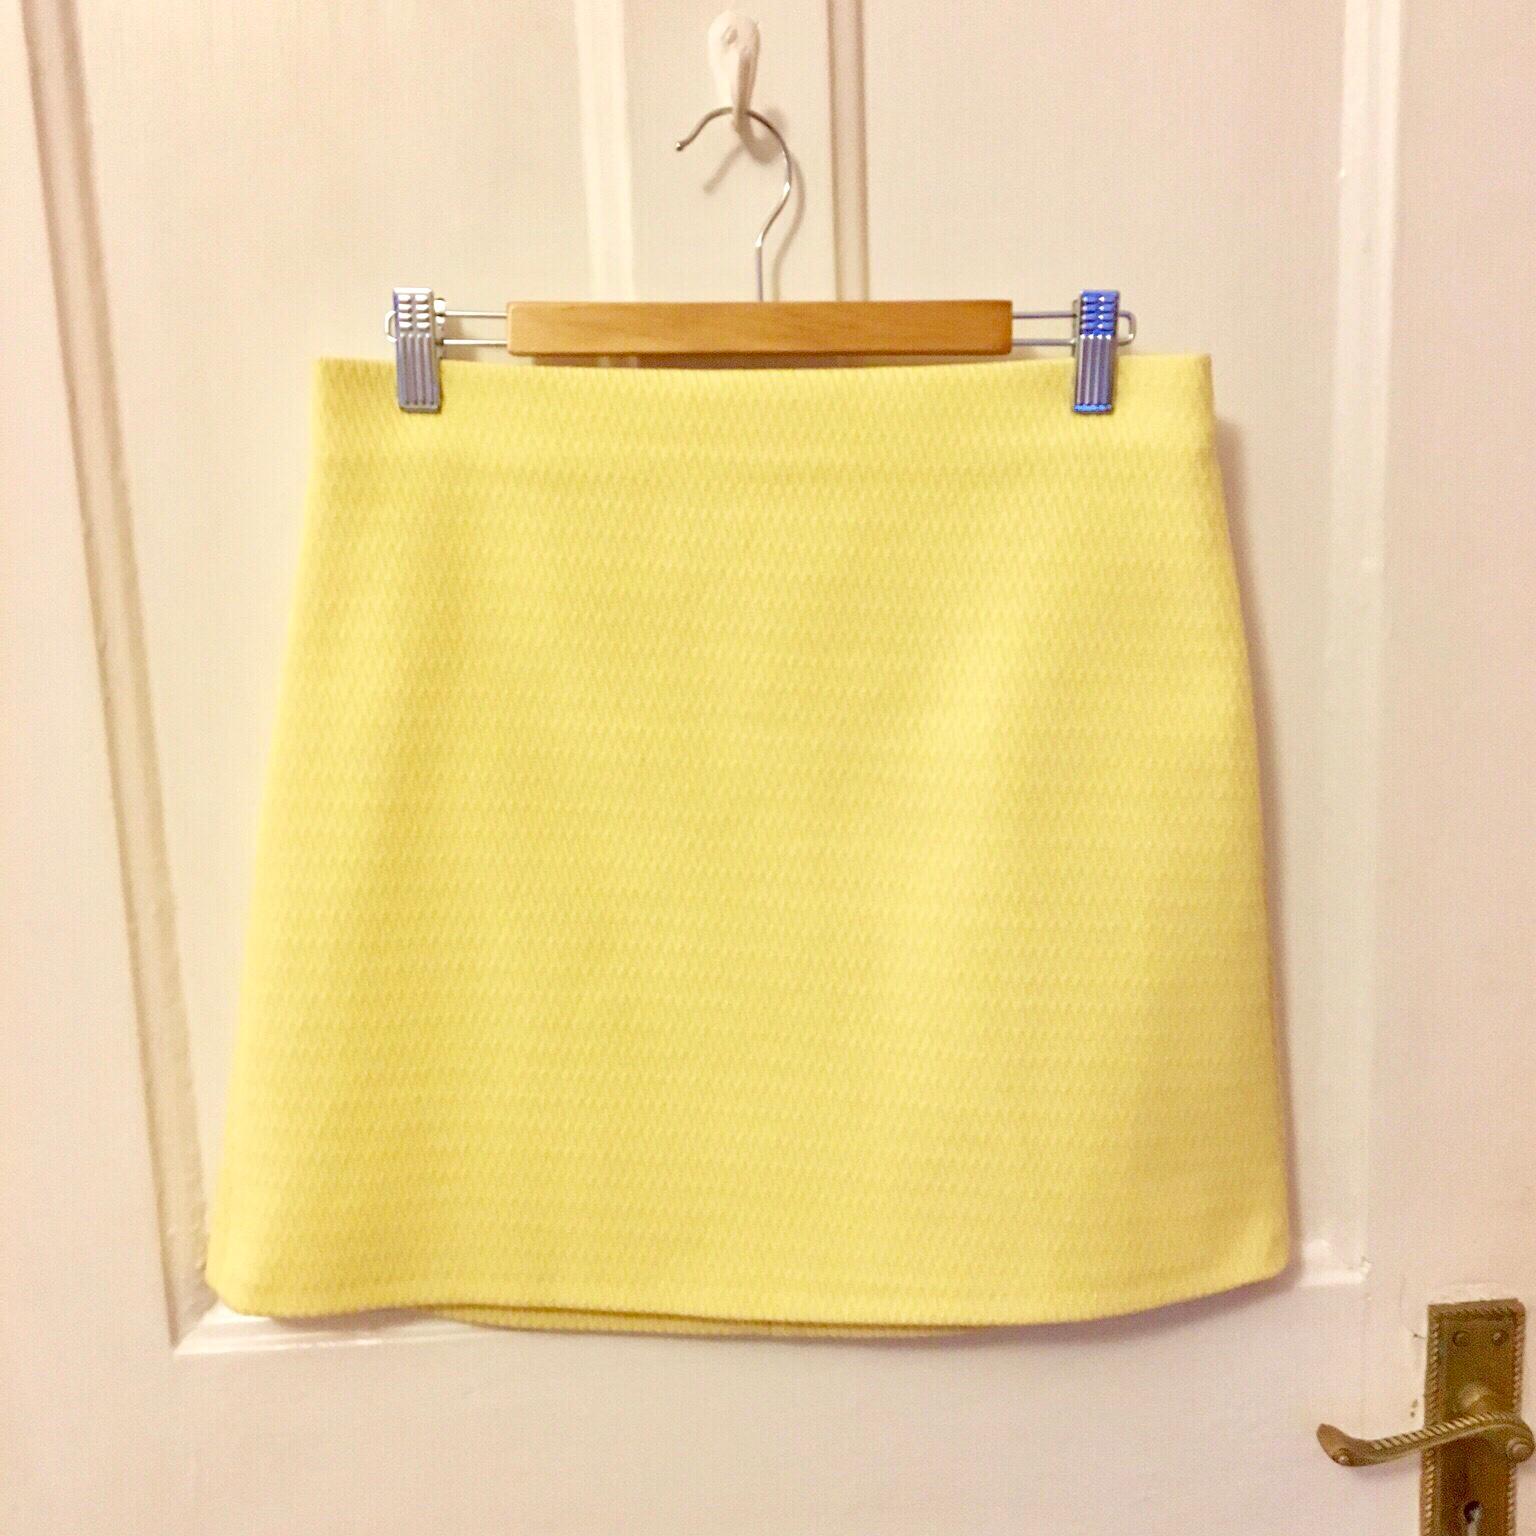 yellow skirt zara